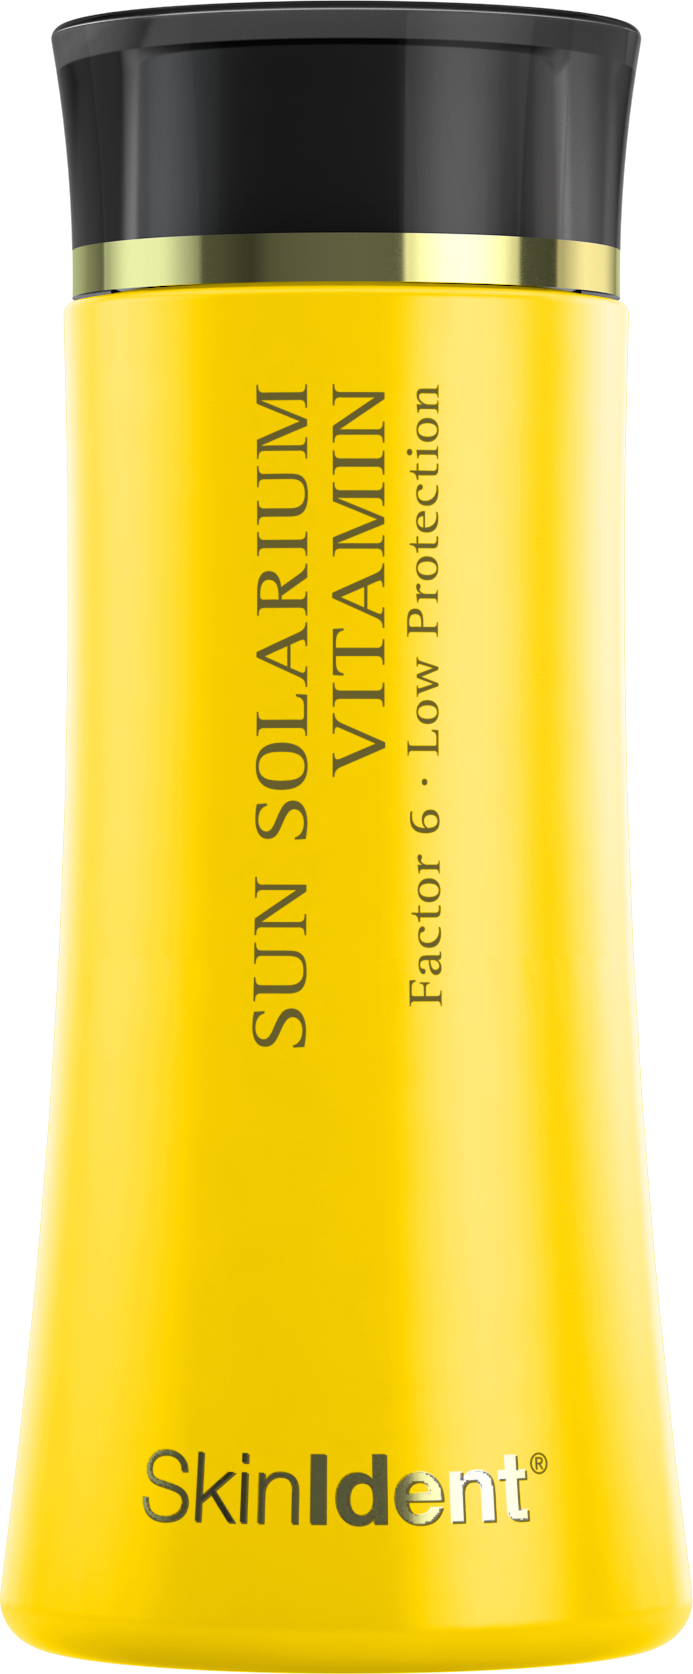 Sun Solarium Vitamin Factor 6 Low Protection